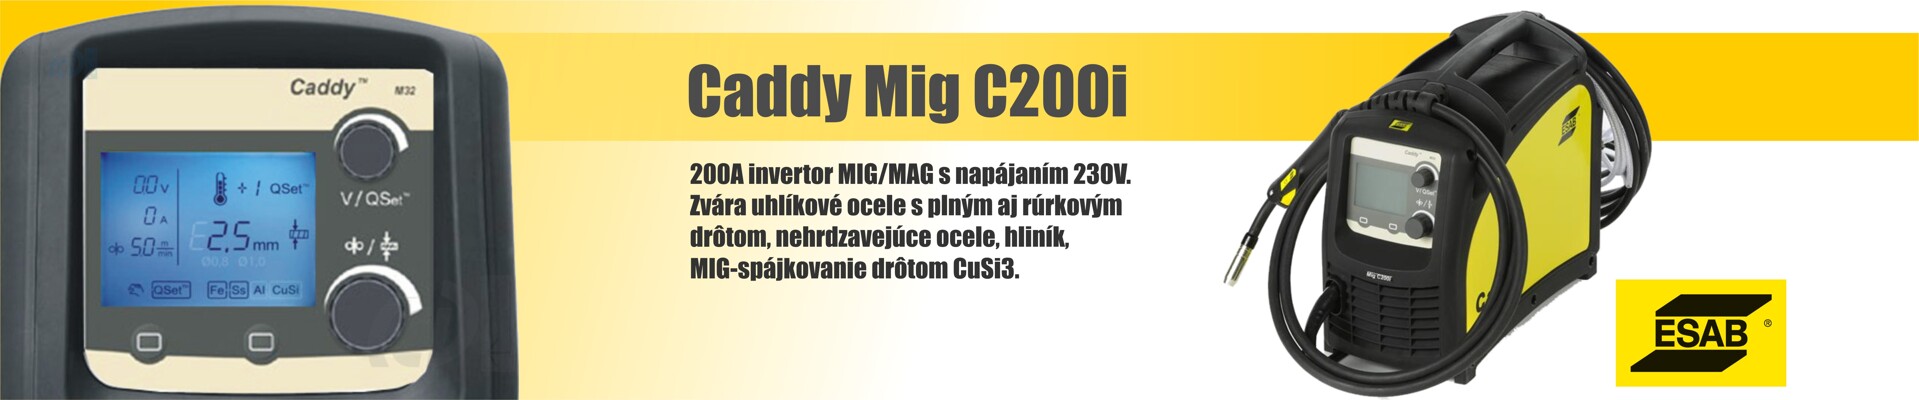 Esab CaddyMig C200i